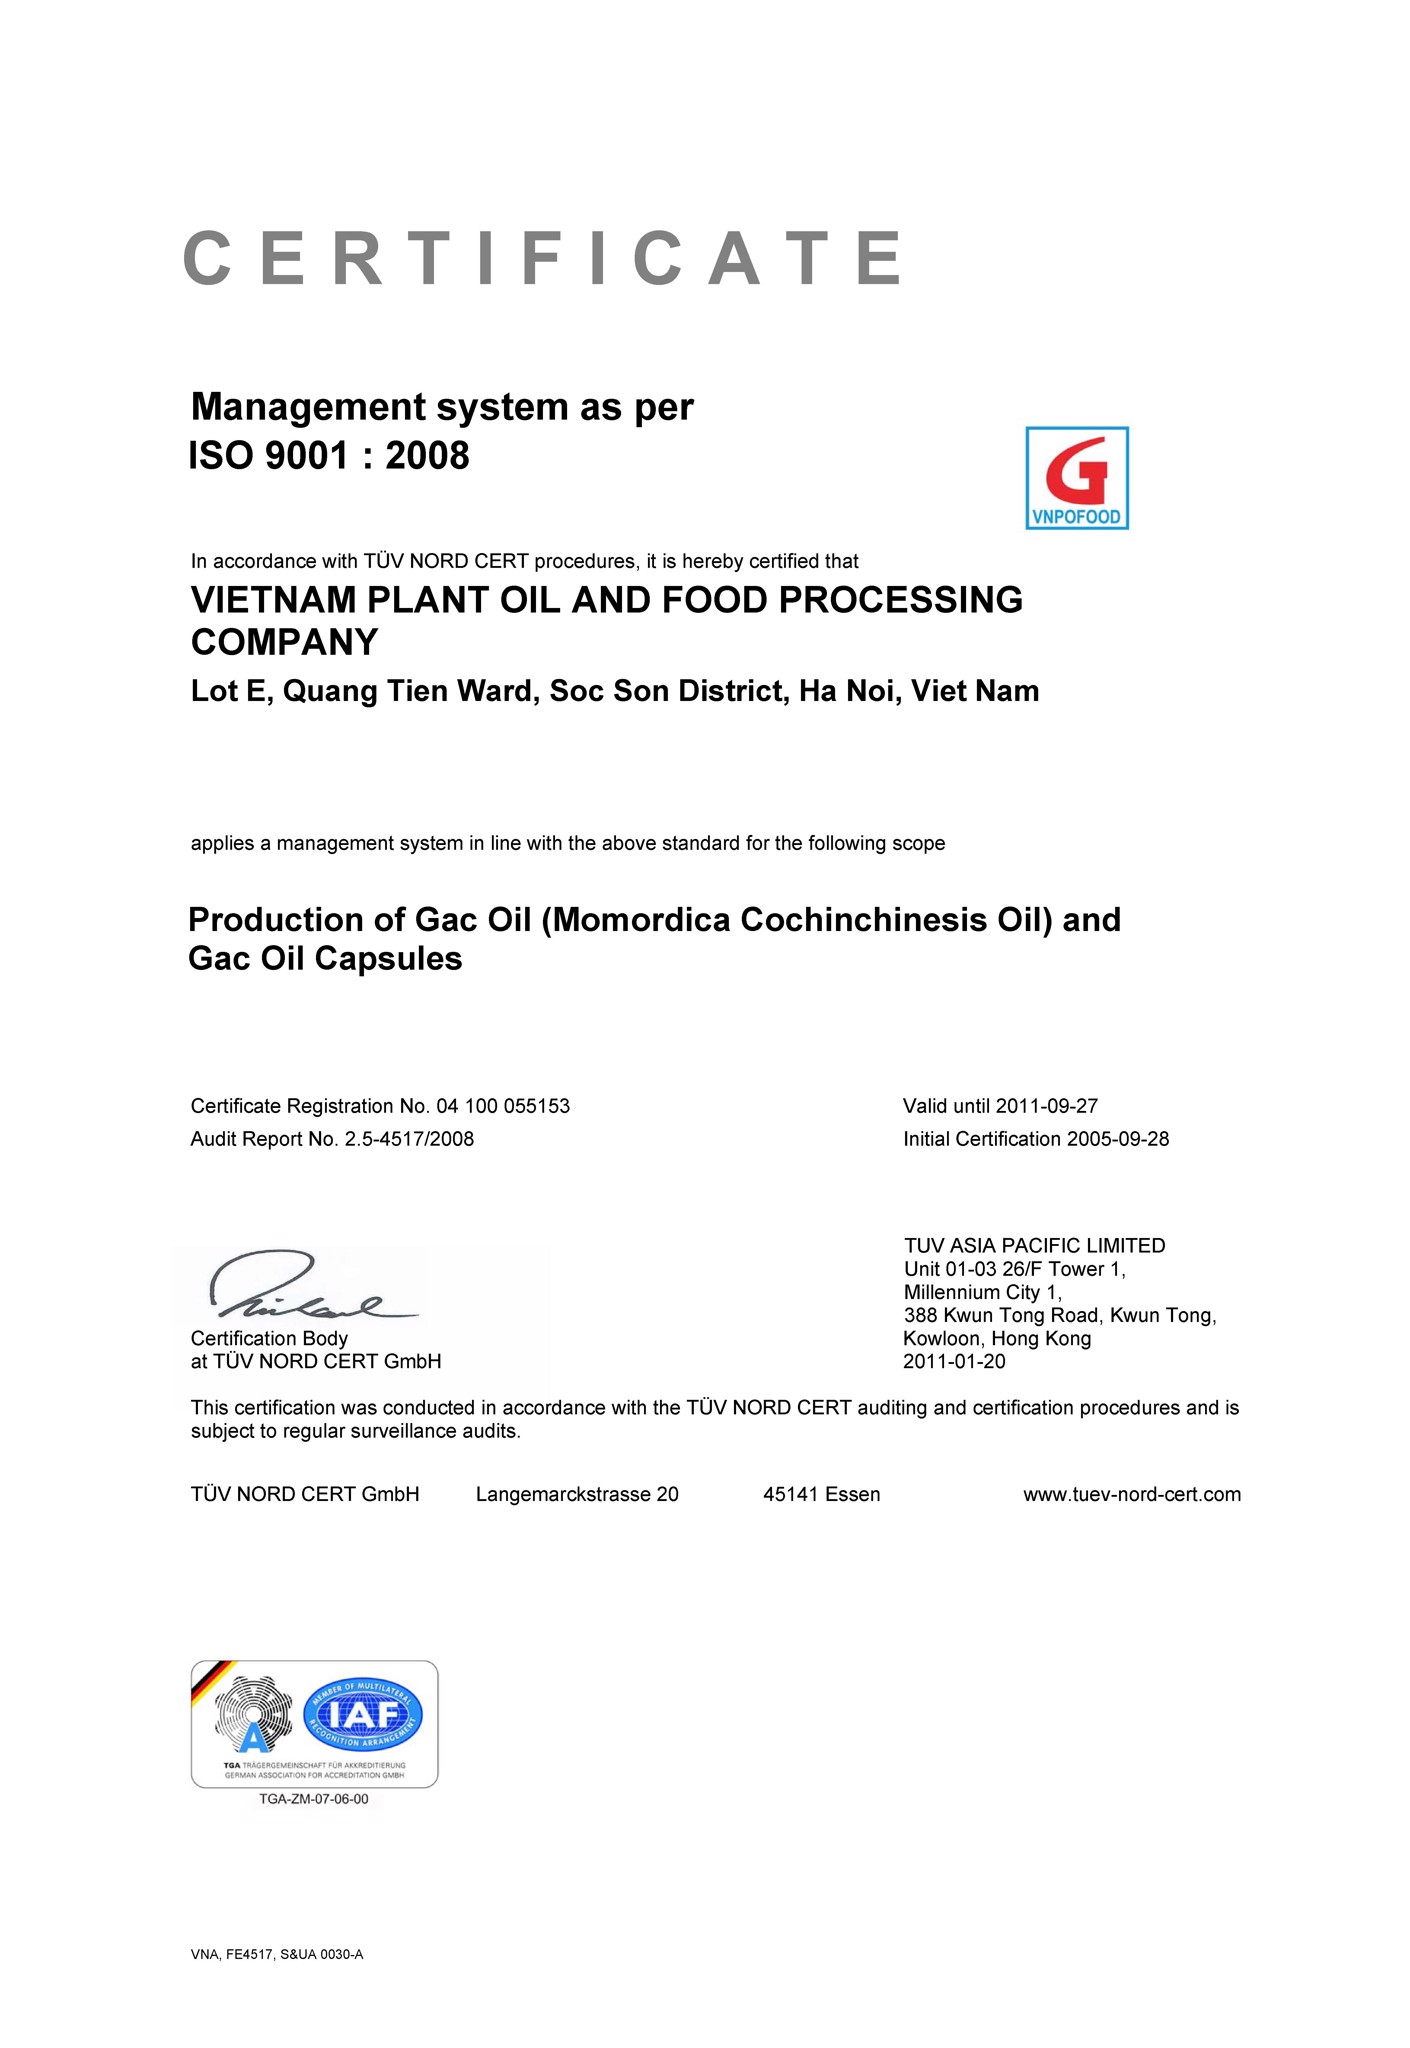 Công ty TNHH Chế biến dầu thực vật và thực phẩm Việt Nam